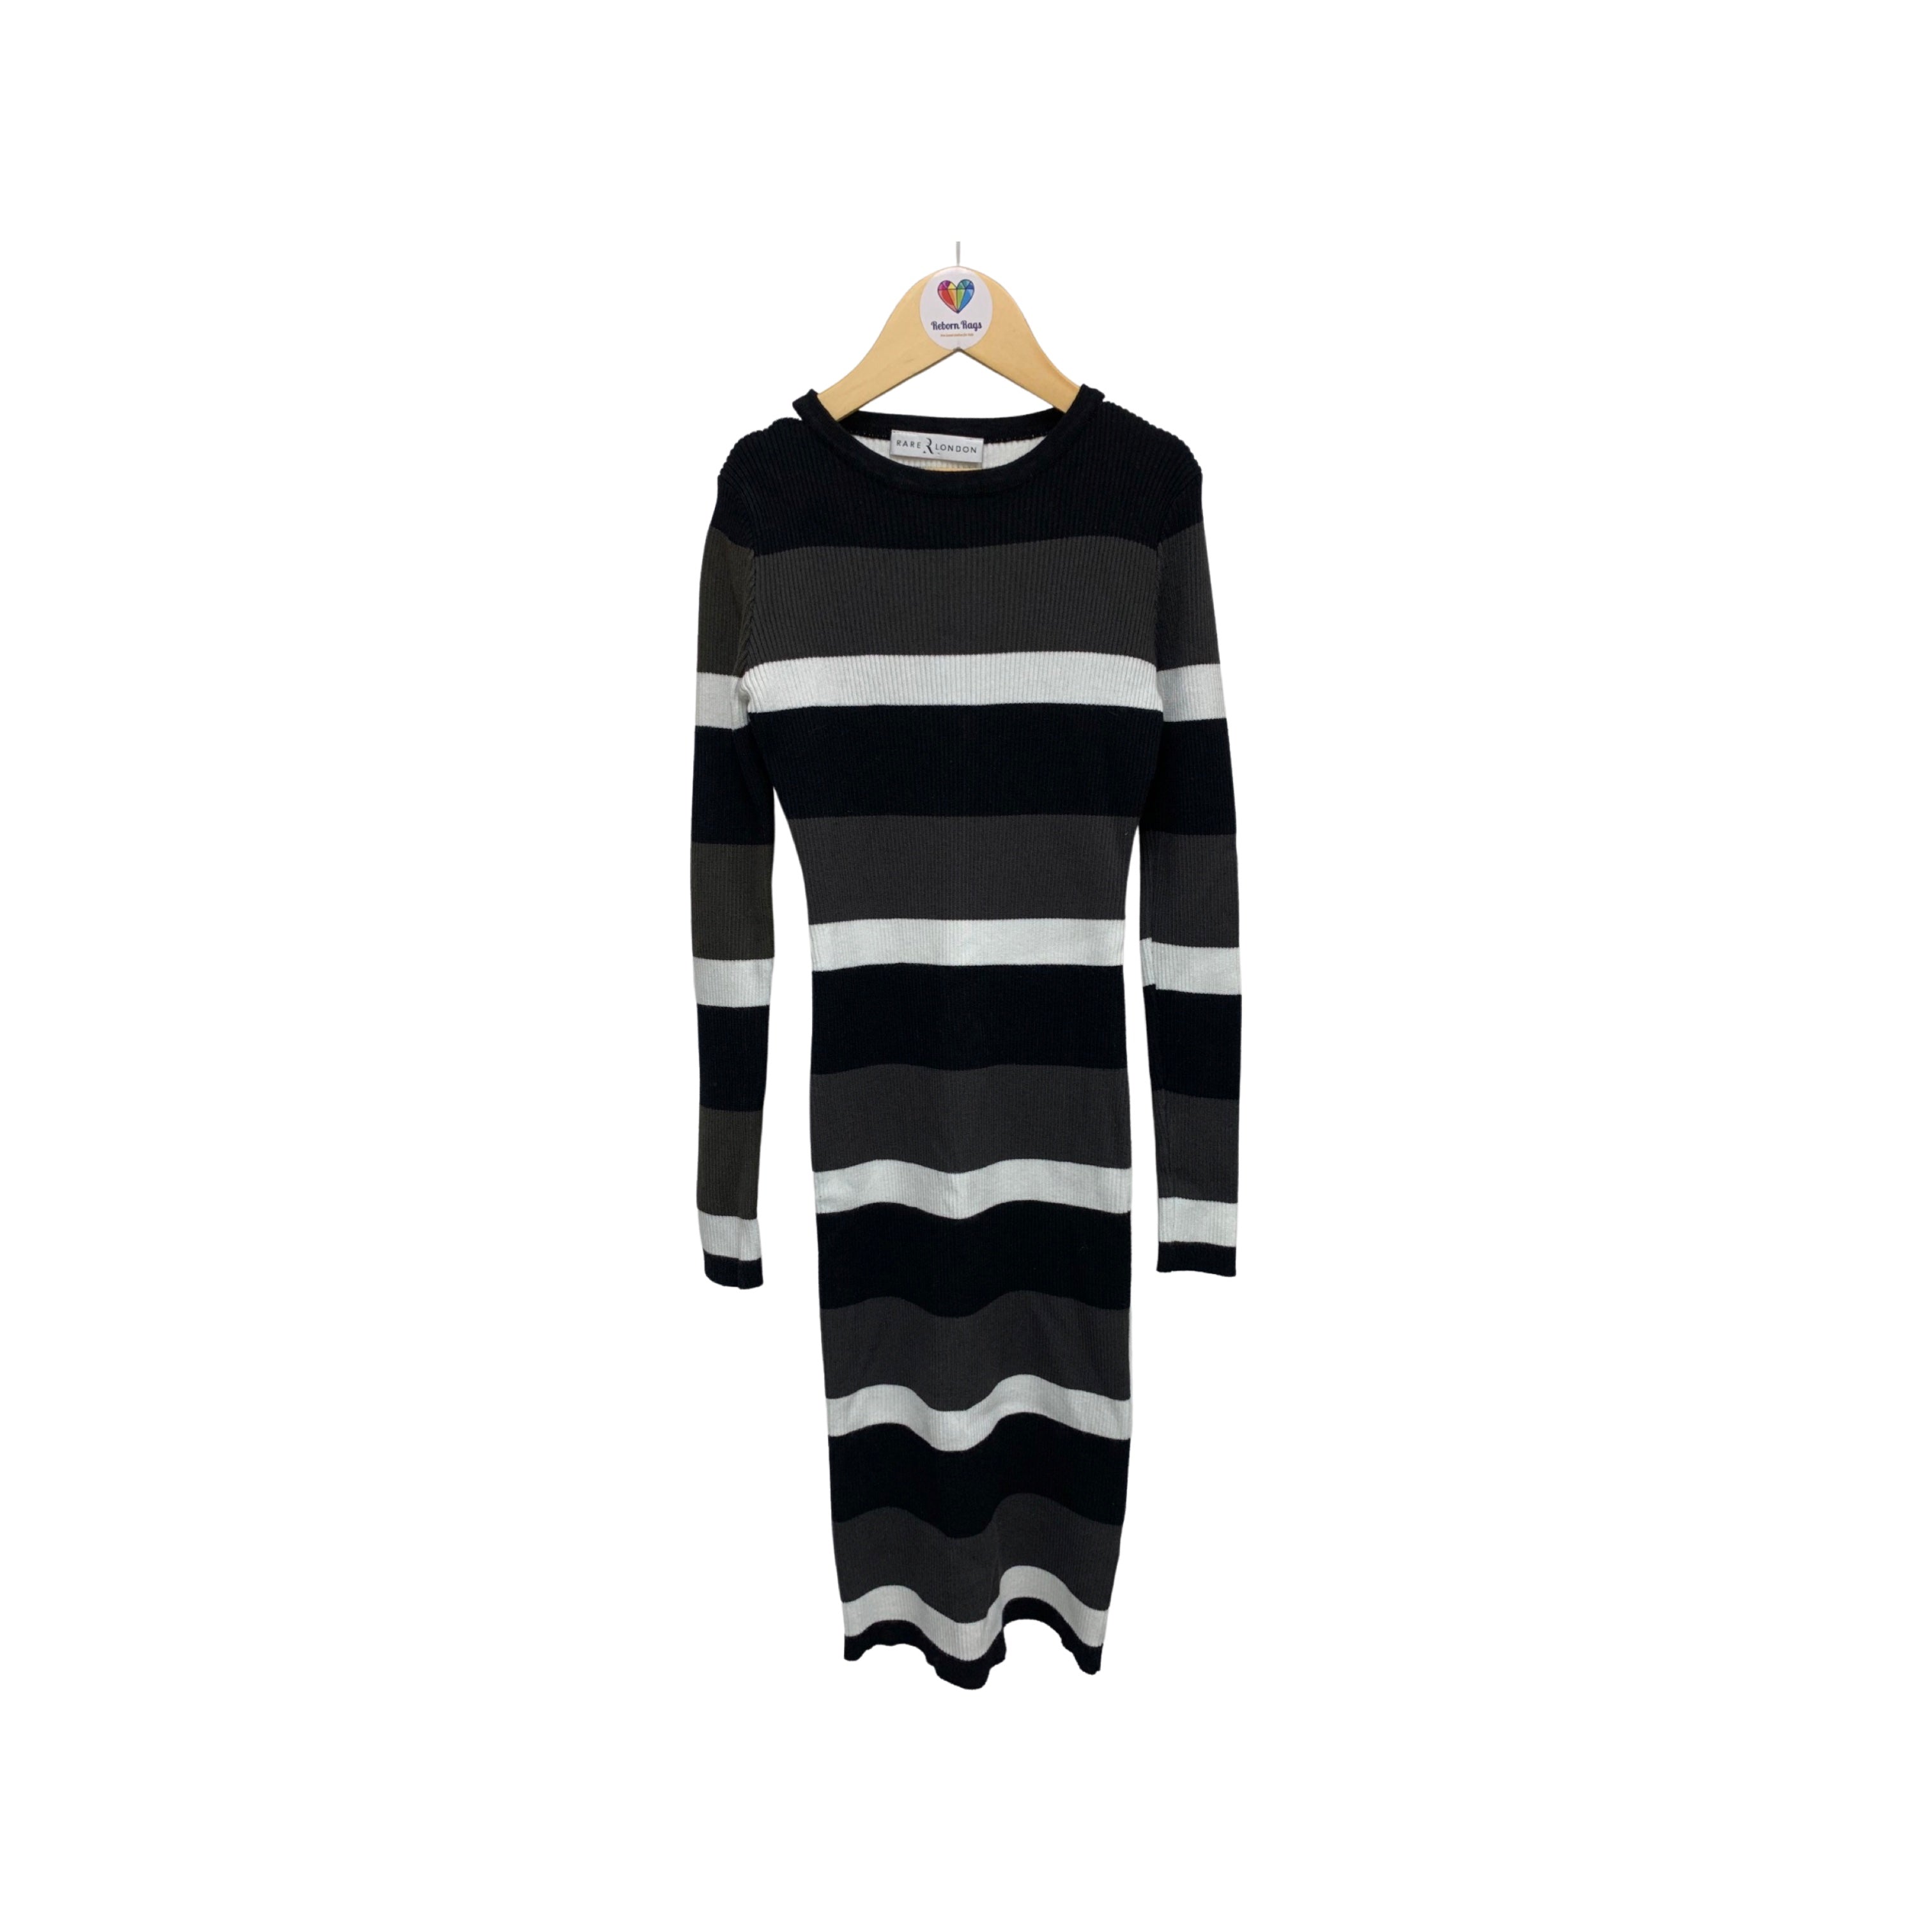 Rare London Striped Knit Bodycon Dress Size 8-10